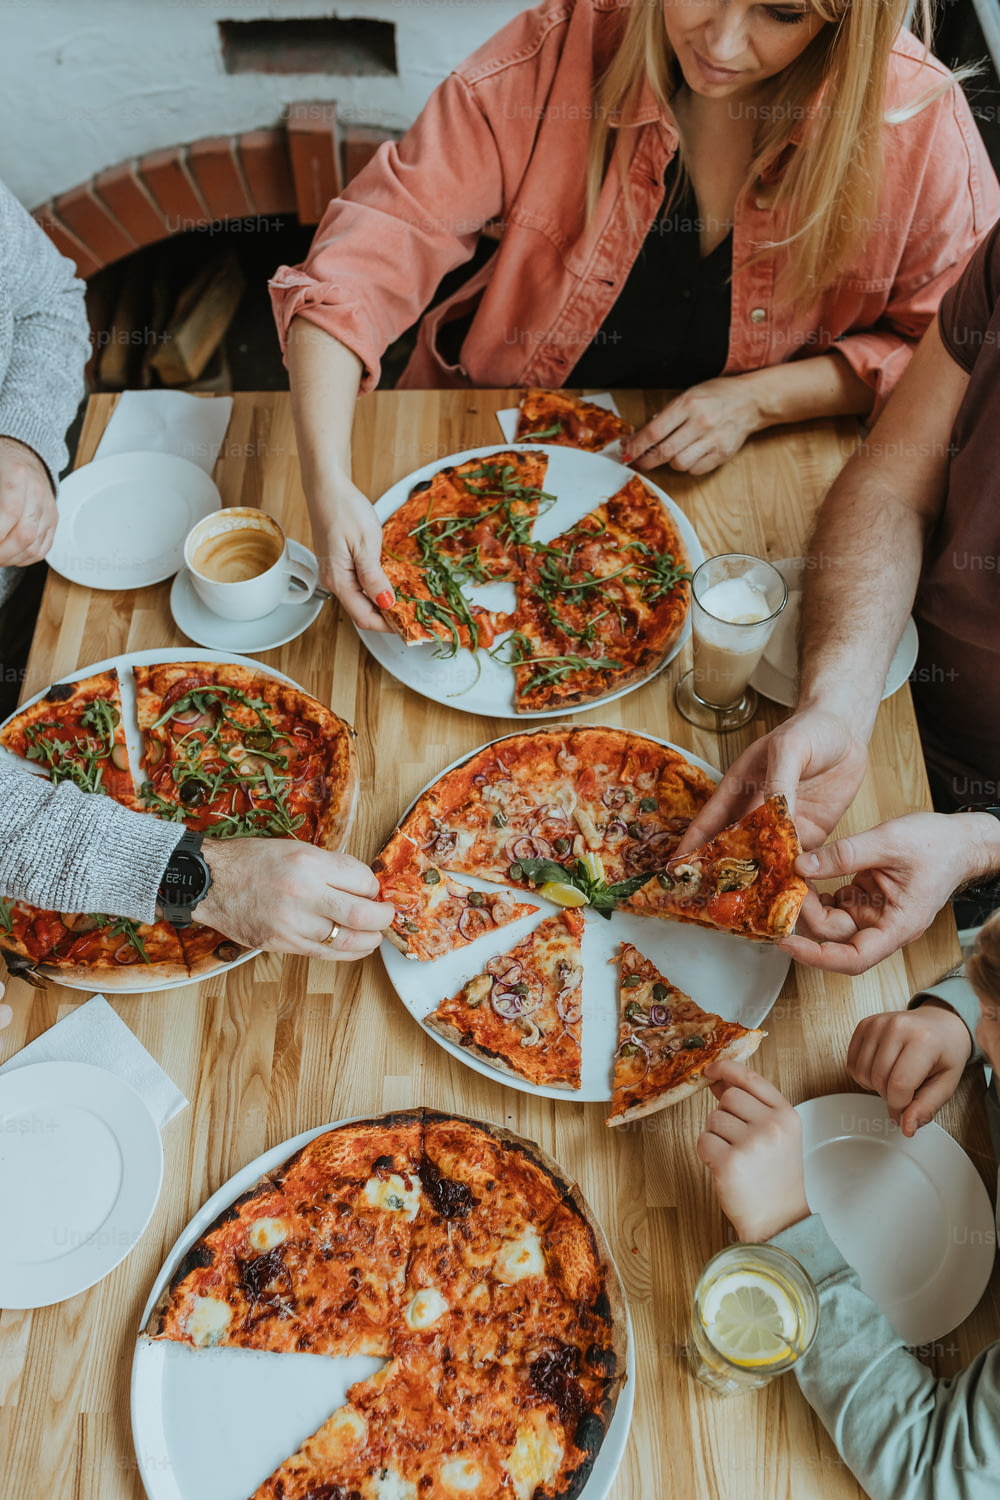 un groupe de personnes assises autour d’une table avec une pizza